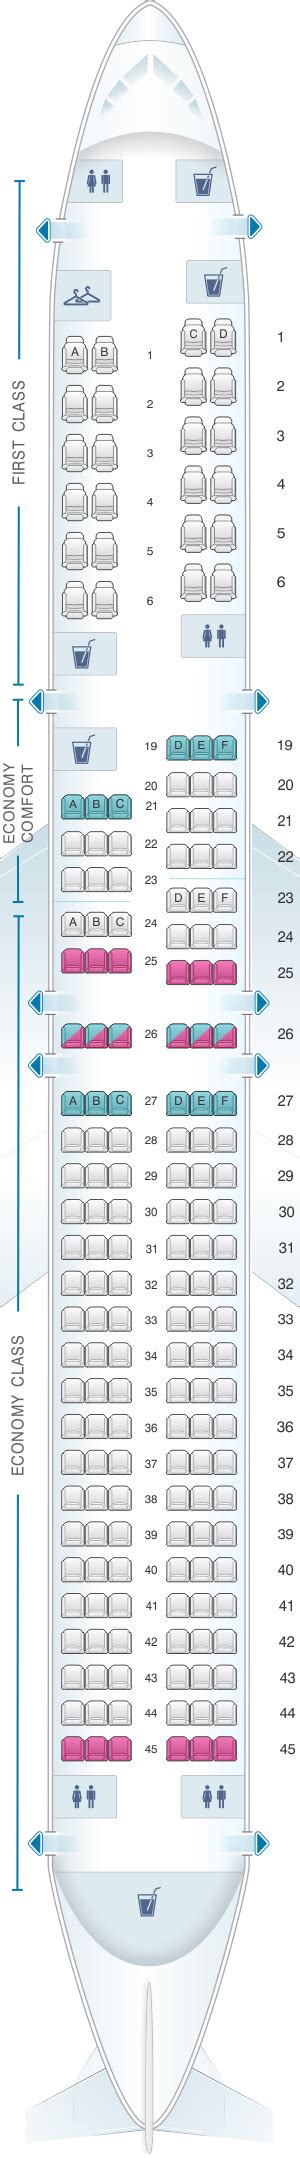 Seat Map Boeing B757 200 757